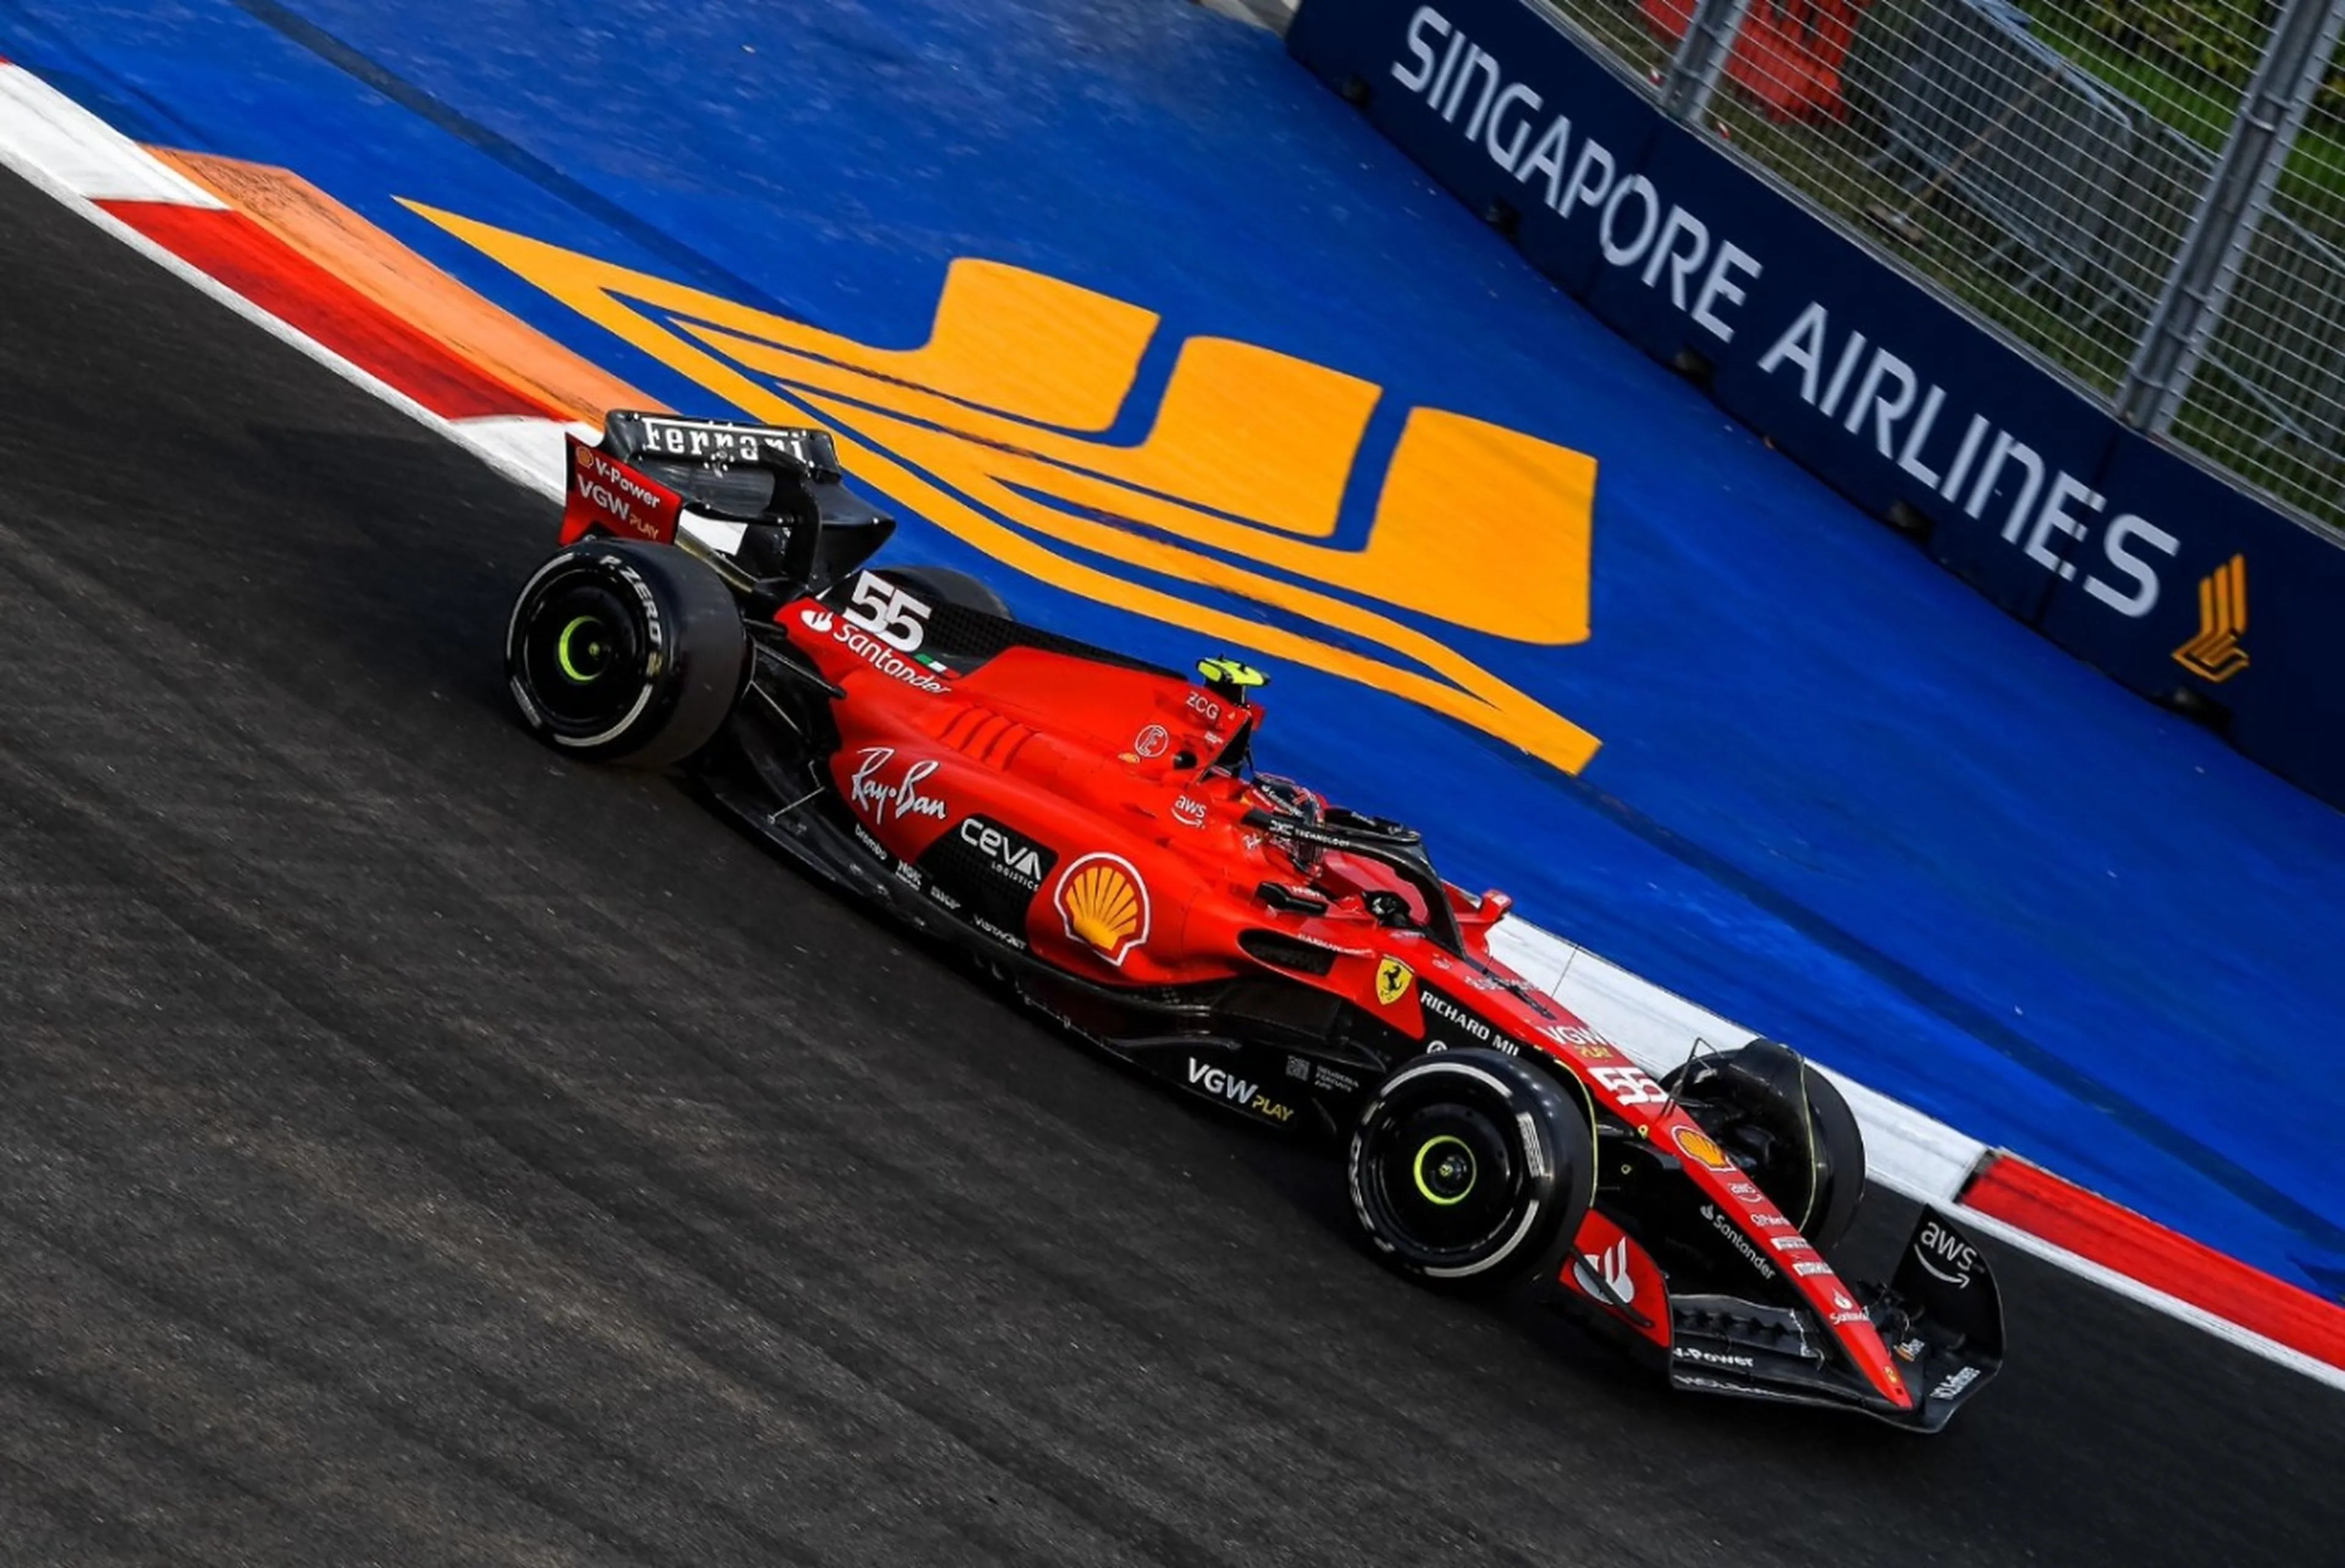 Ferrari saca músculo en los primeros libres: doblete de Charles Leclerc y Carlos Sainz